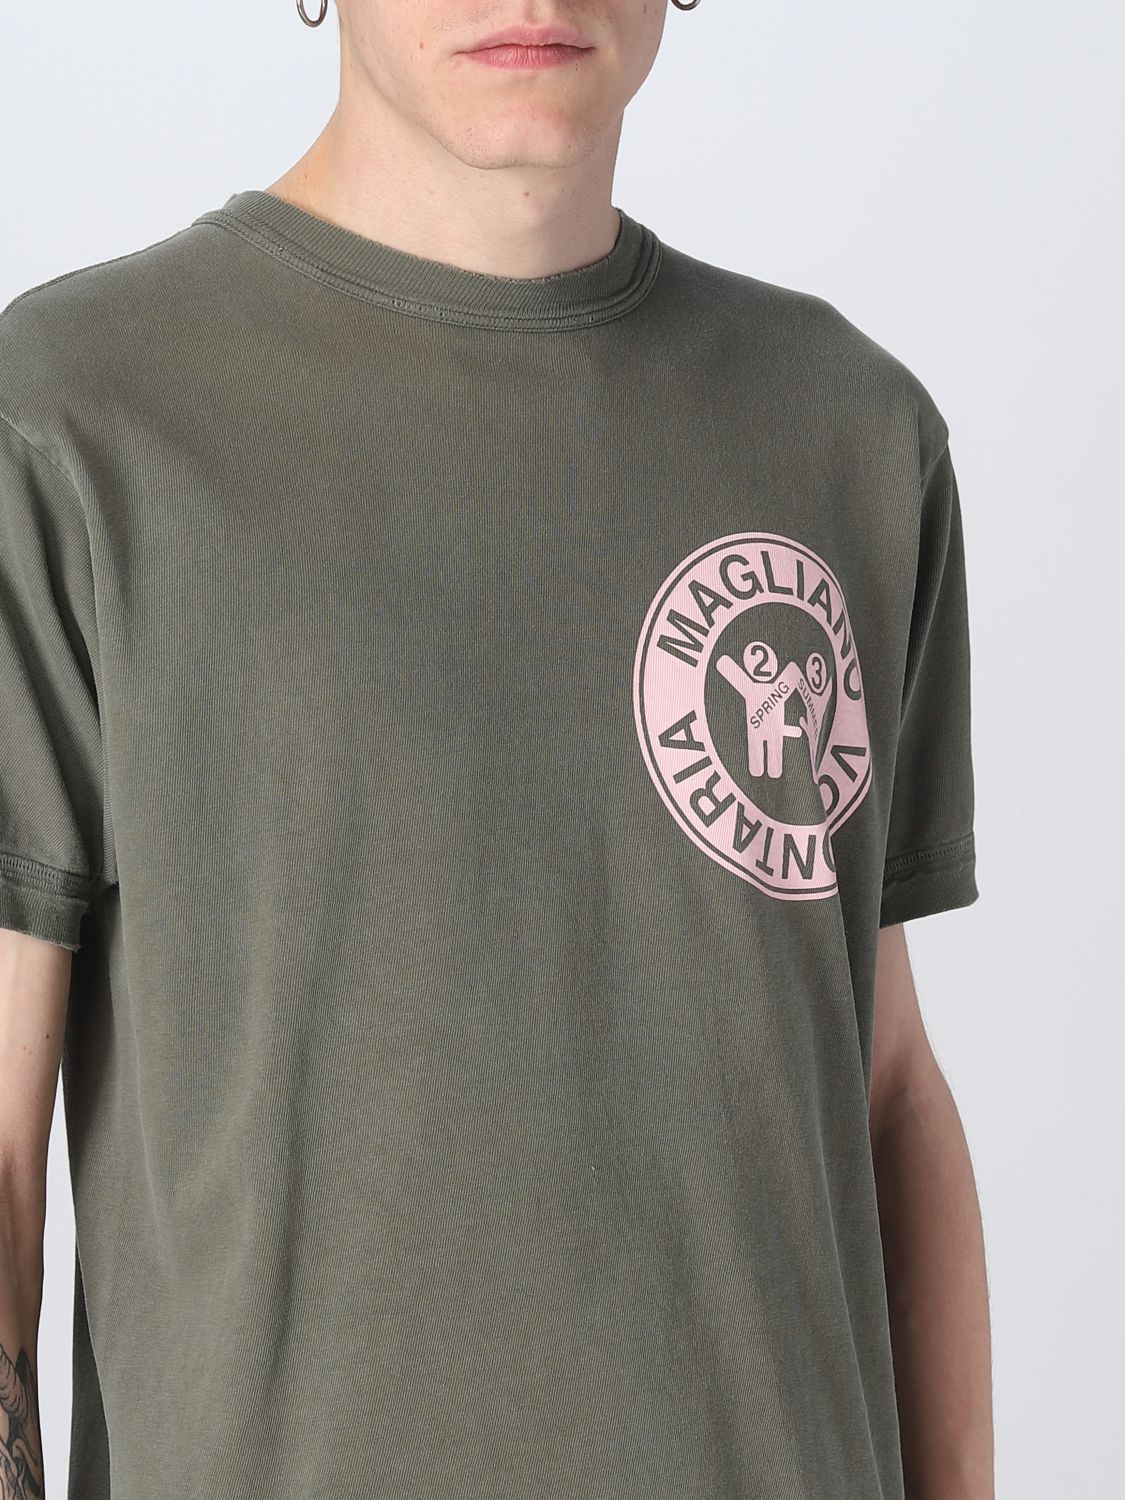 T-shirt Magliano: T-shirt di cotone Magliano con stampa grafica militare 4